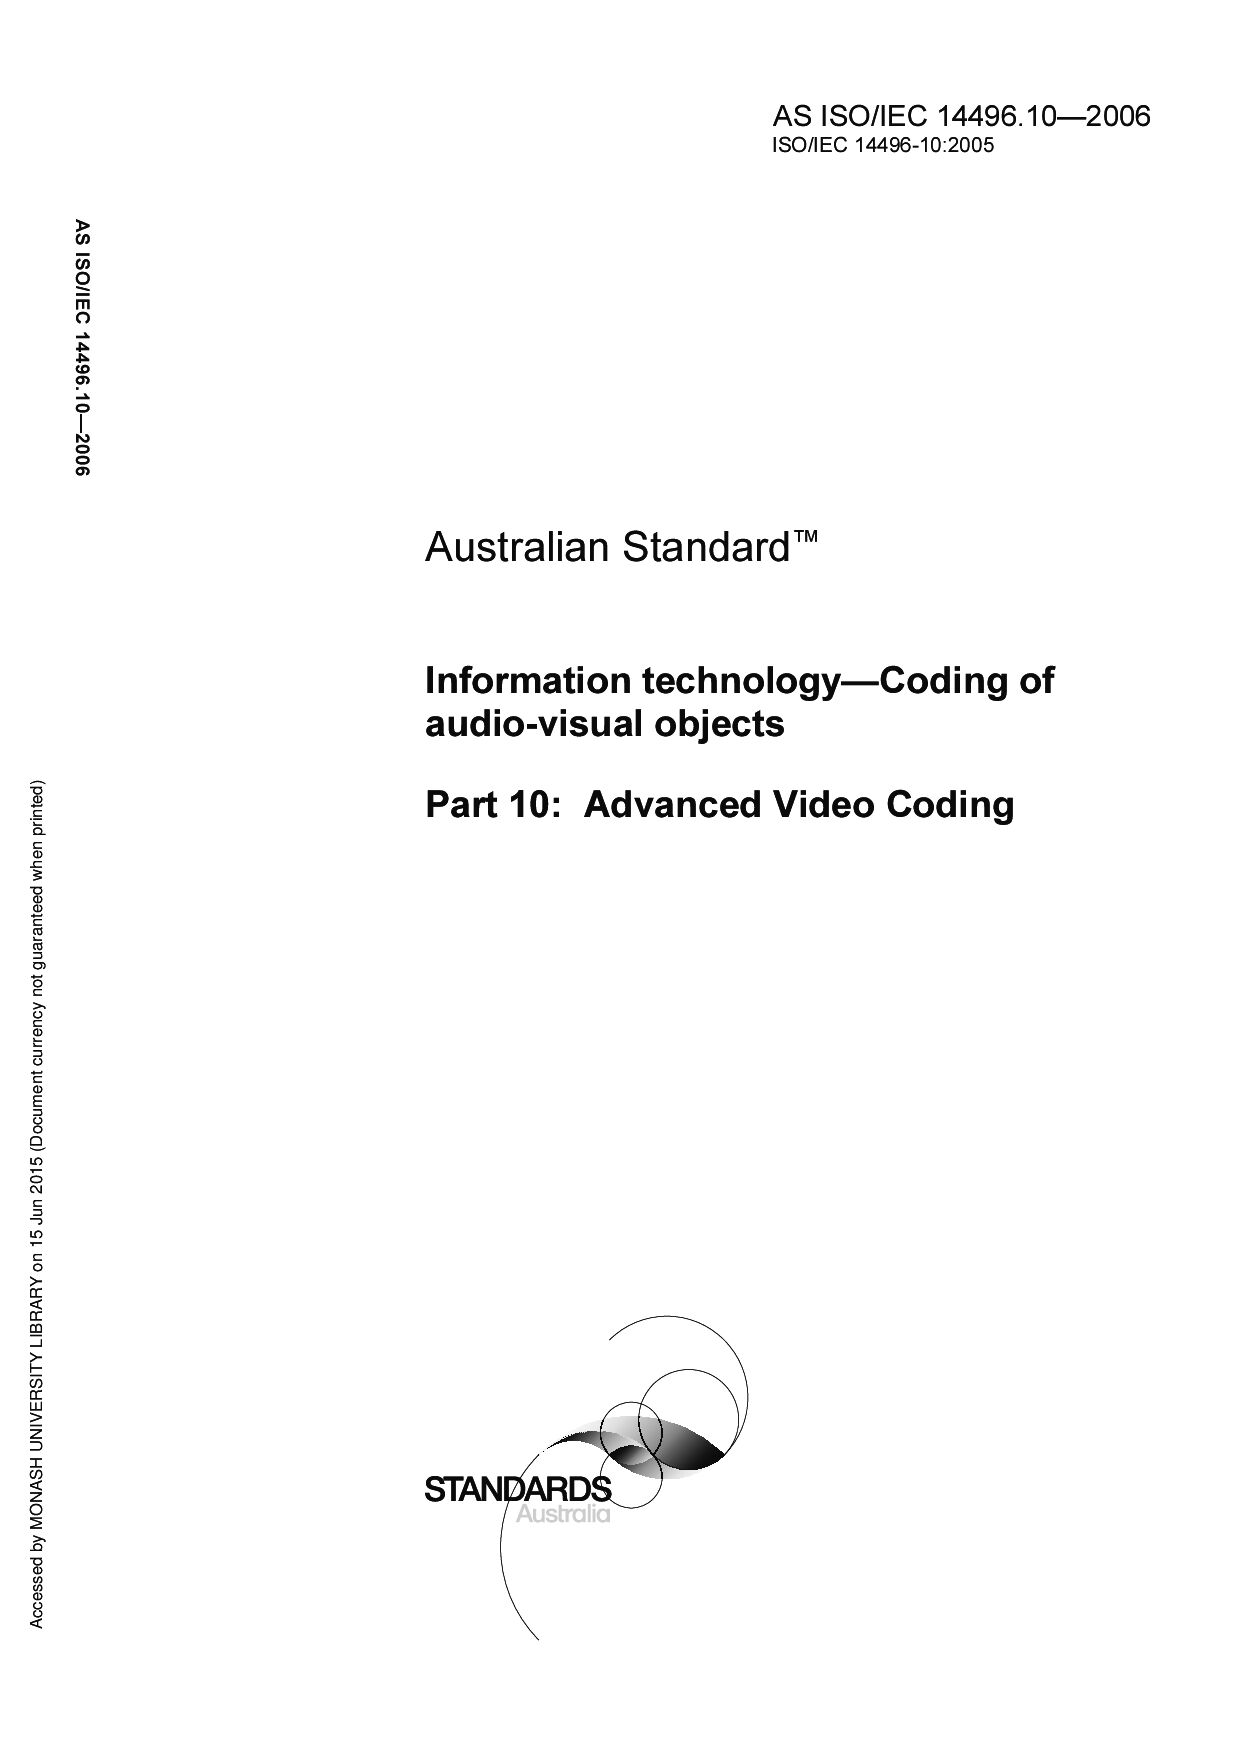 AS ISO/IEC 14496.10:2006封面图